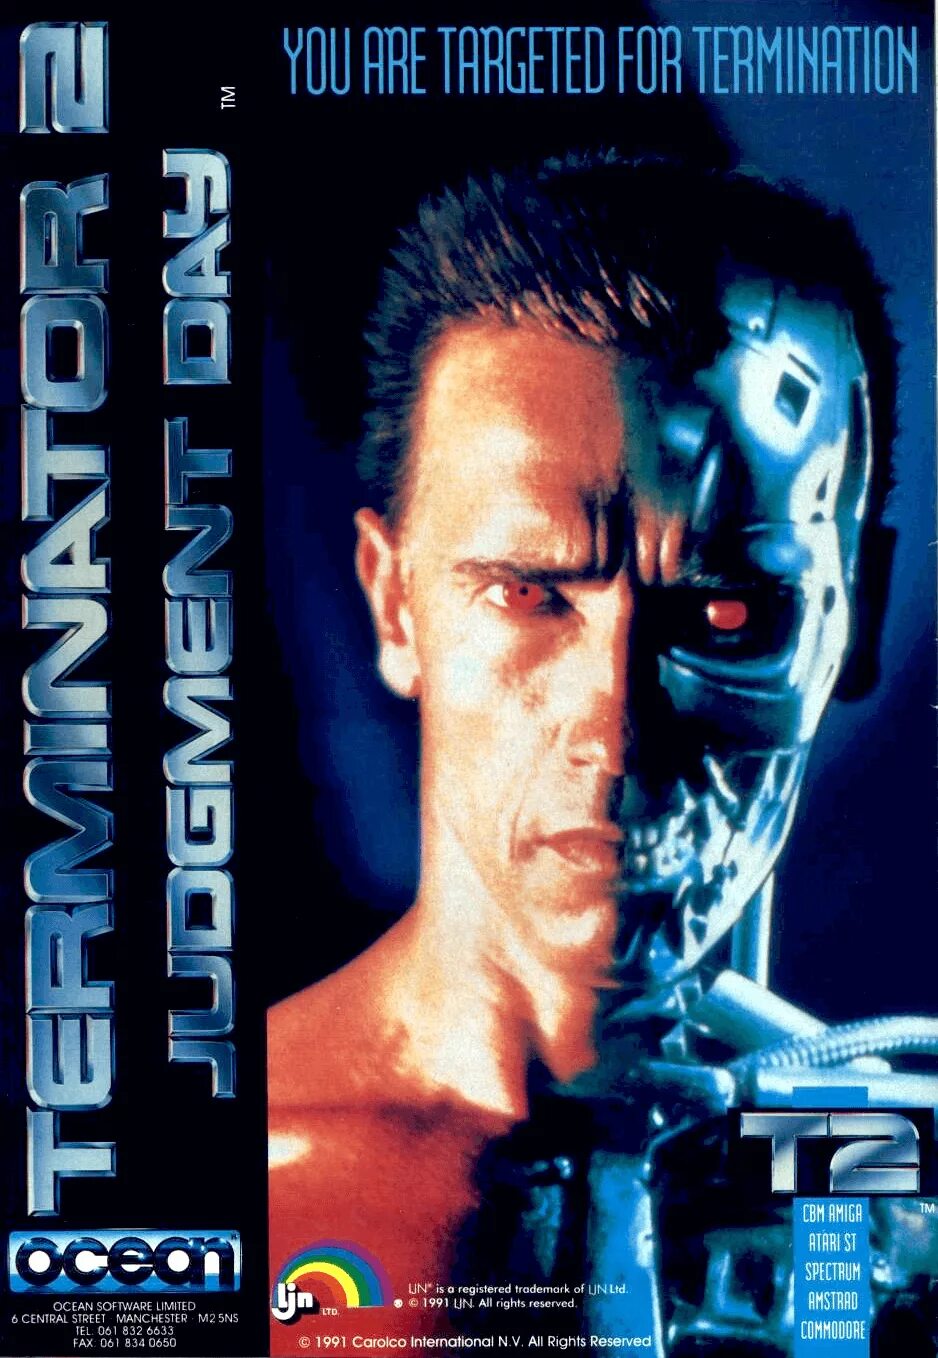 The Terminator игра 1991. Терминатор 2 Judgment Day. Terminator 2 Judgment Day игра 1991. Терминатор 1991 VHS.